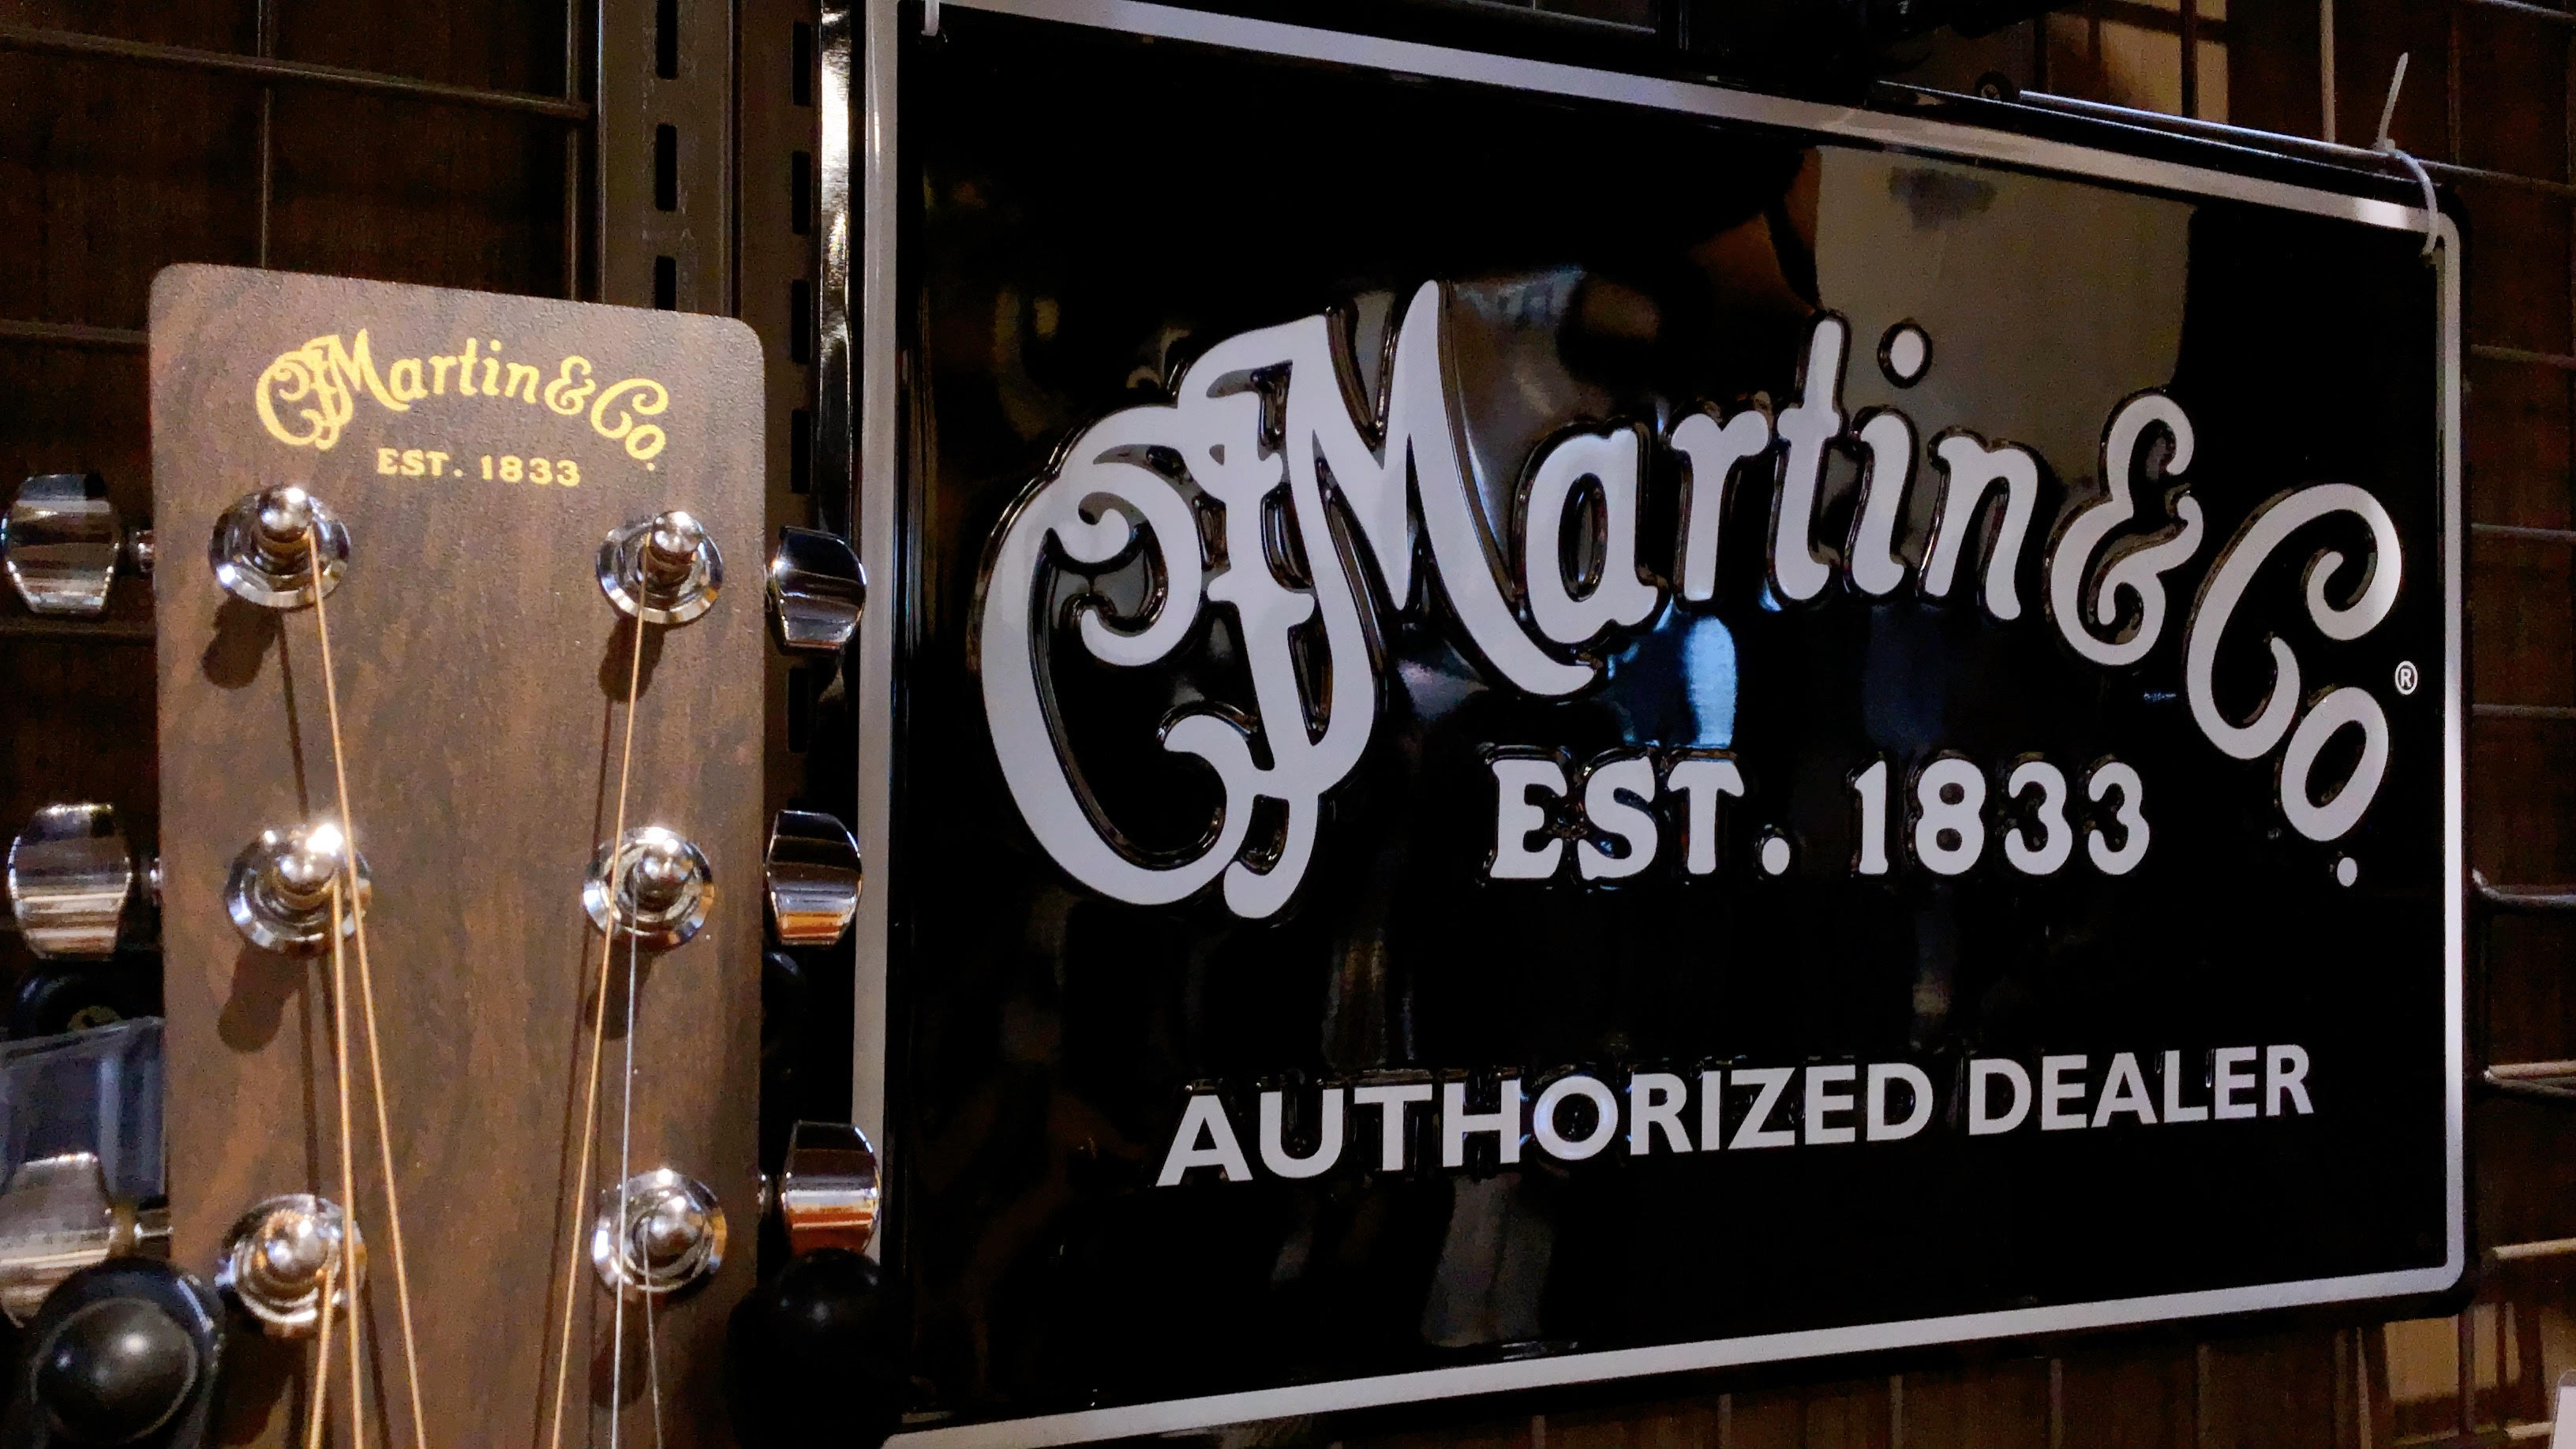 島村楽器大分店では、Martinのアコースティックギターを販売中です！みんなの永遠の憧れであるMartinギター。この記事では、店頭にて販売中のラインナップをご紹介致します✨ CONTENTSMartin 50万円以上Martin 40万円台Martin 30万円台Martin 10～20万円台Ma […]